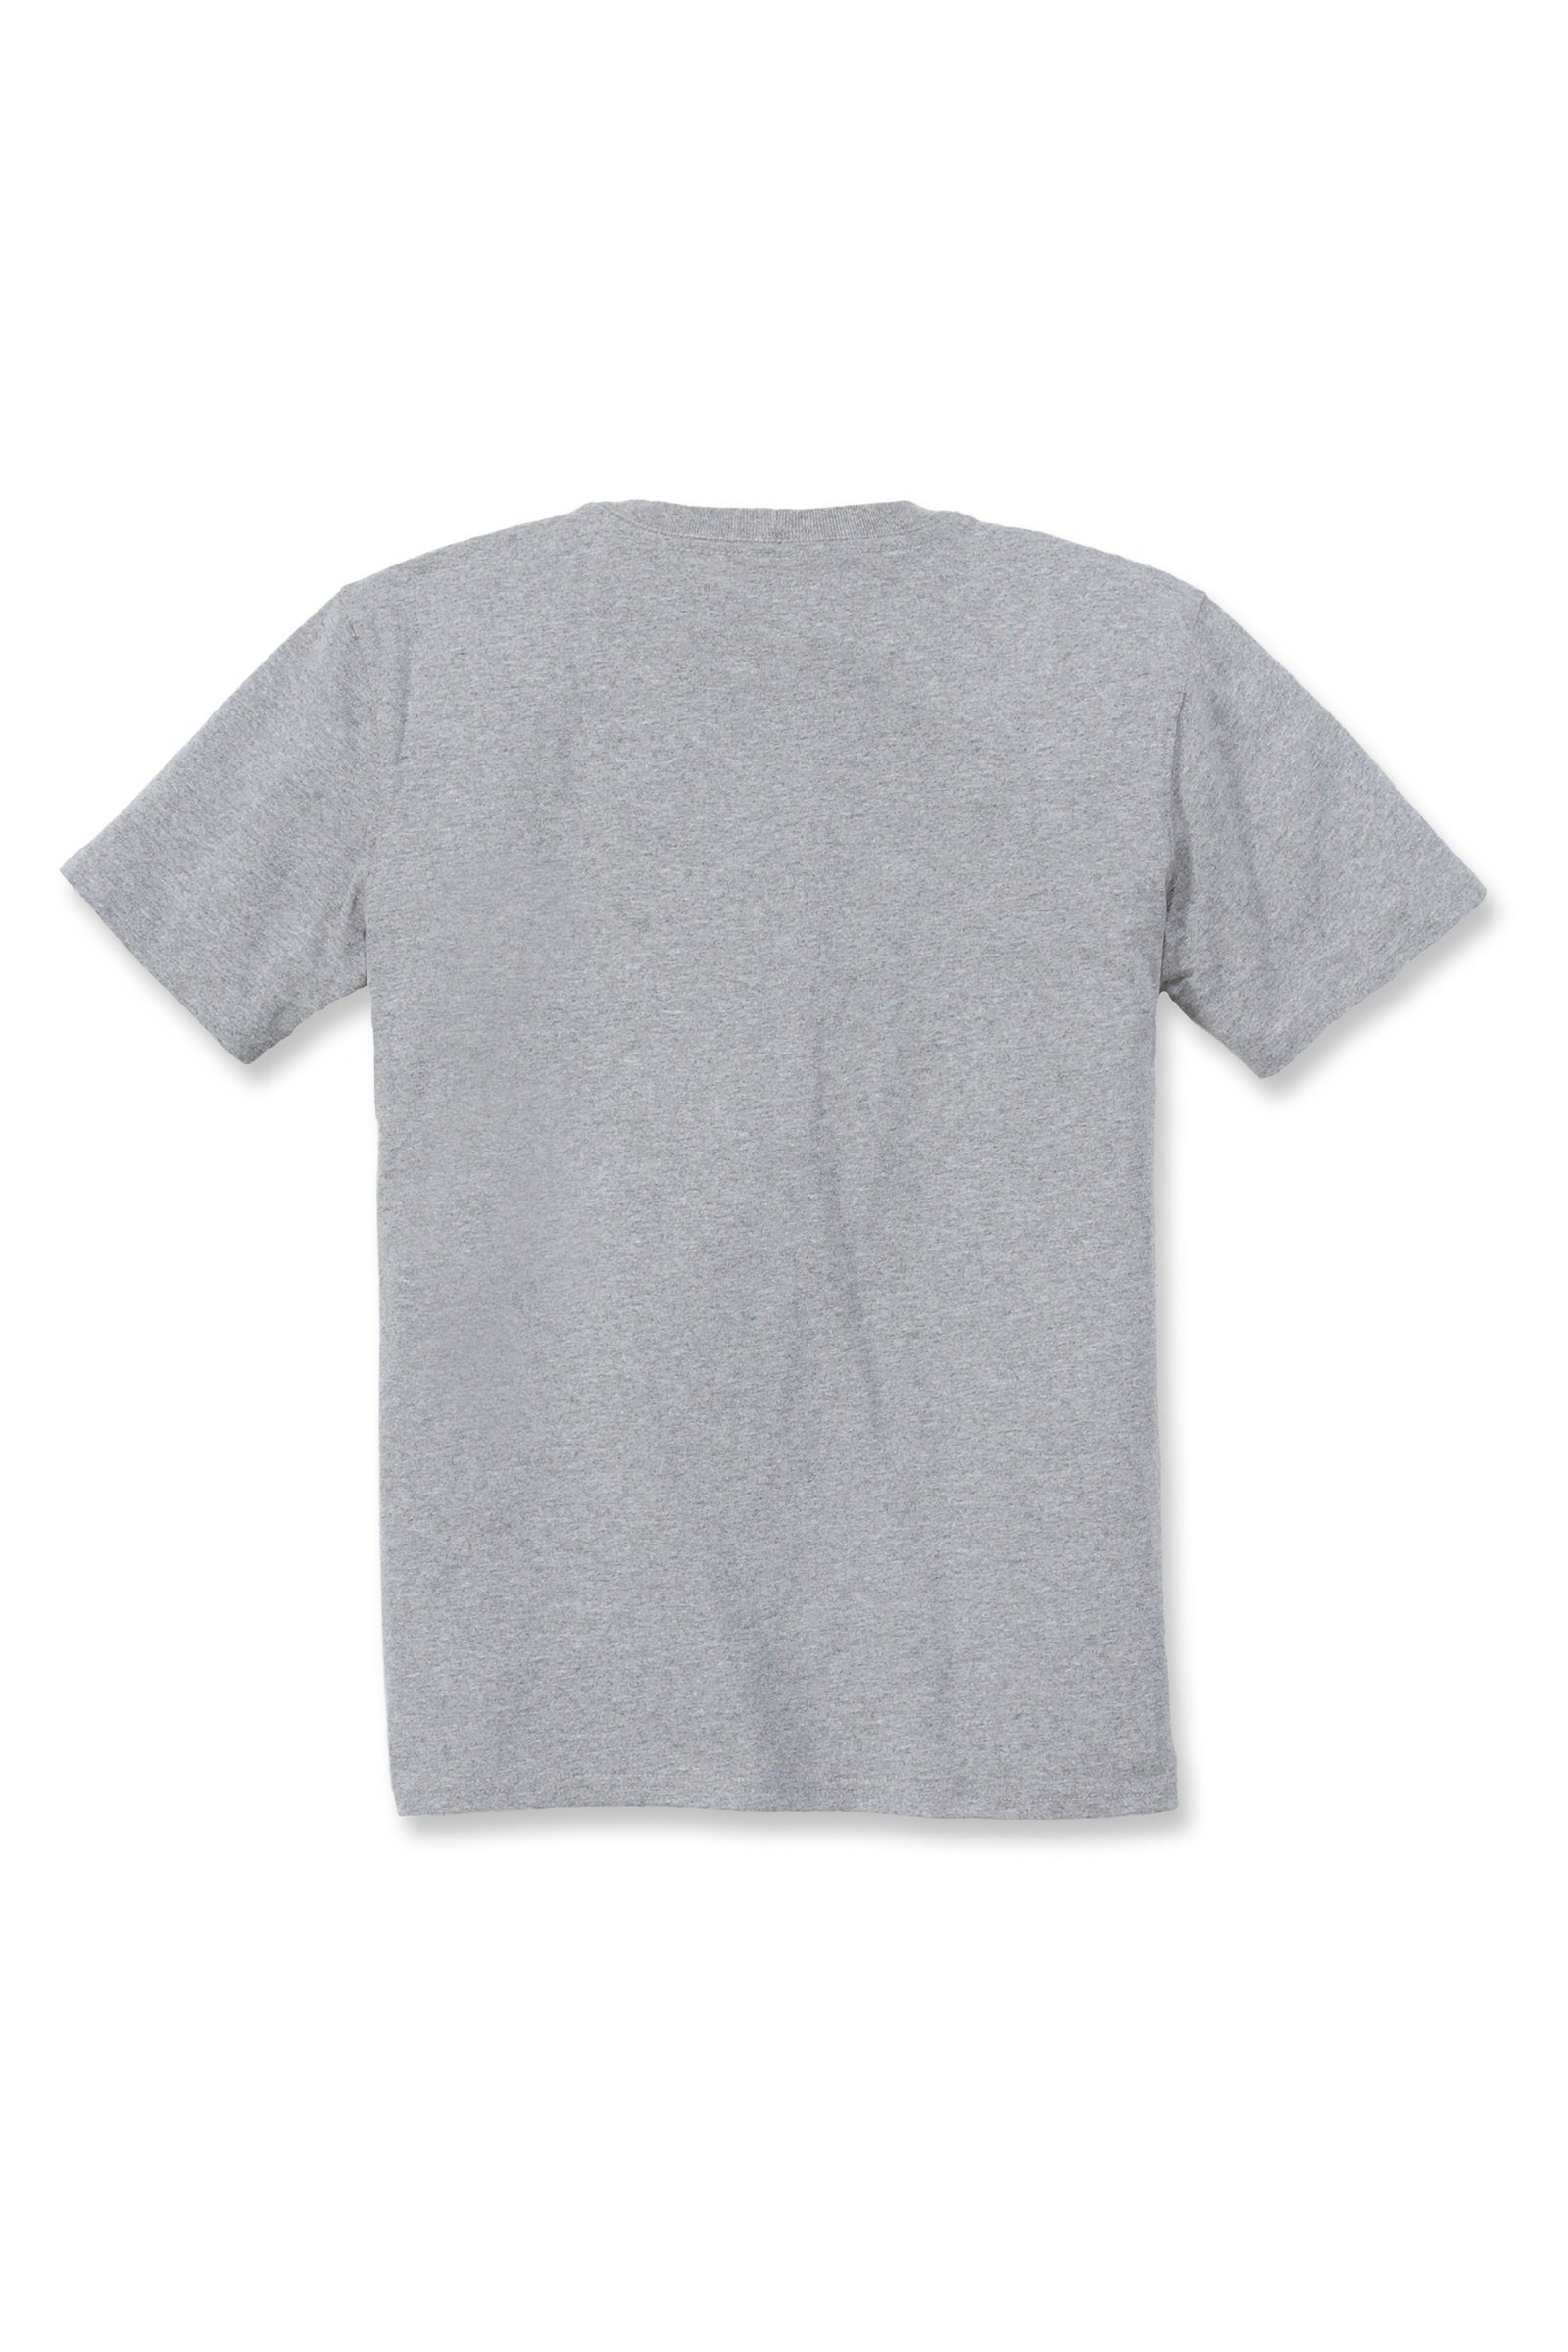 Short-Sleeve T-Shirt Carhartt Damen T-Shirt heather grey Pocket Carhartt Loose Adult Heavyweight Fit